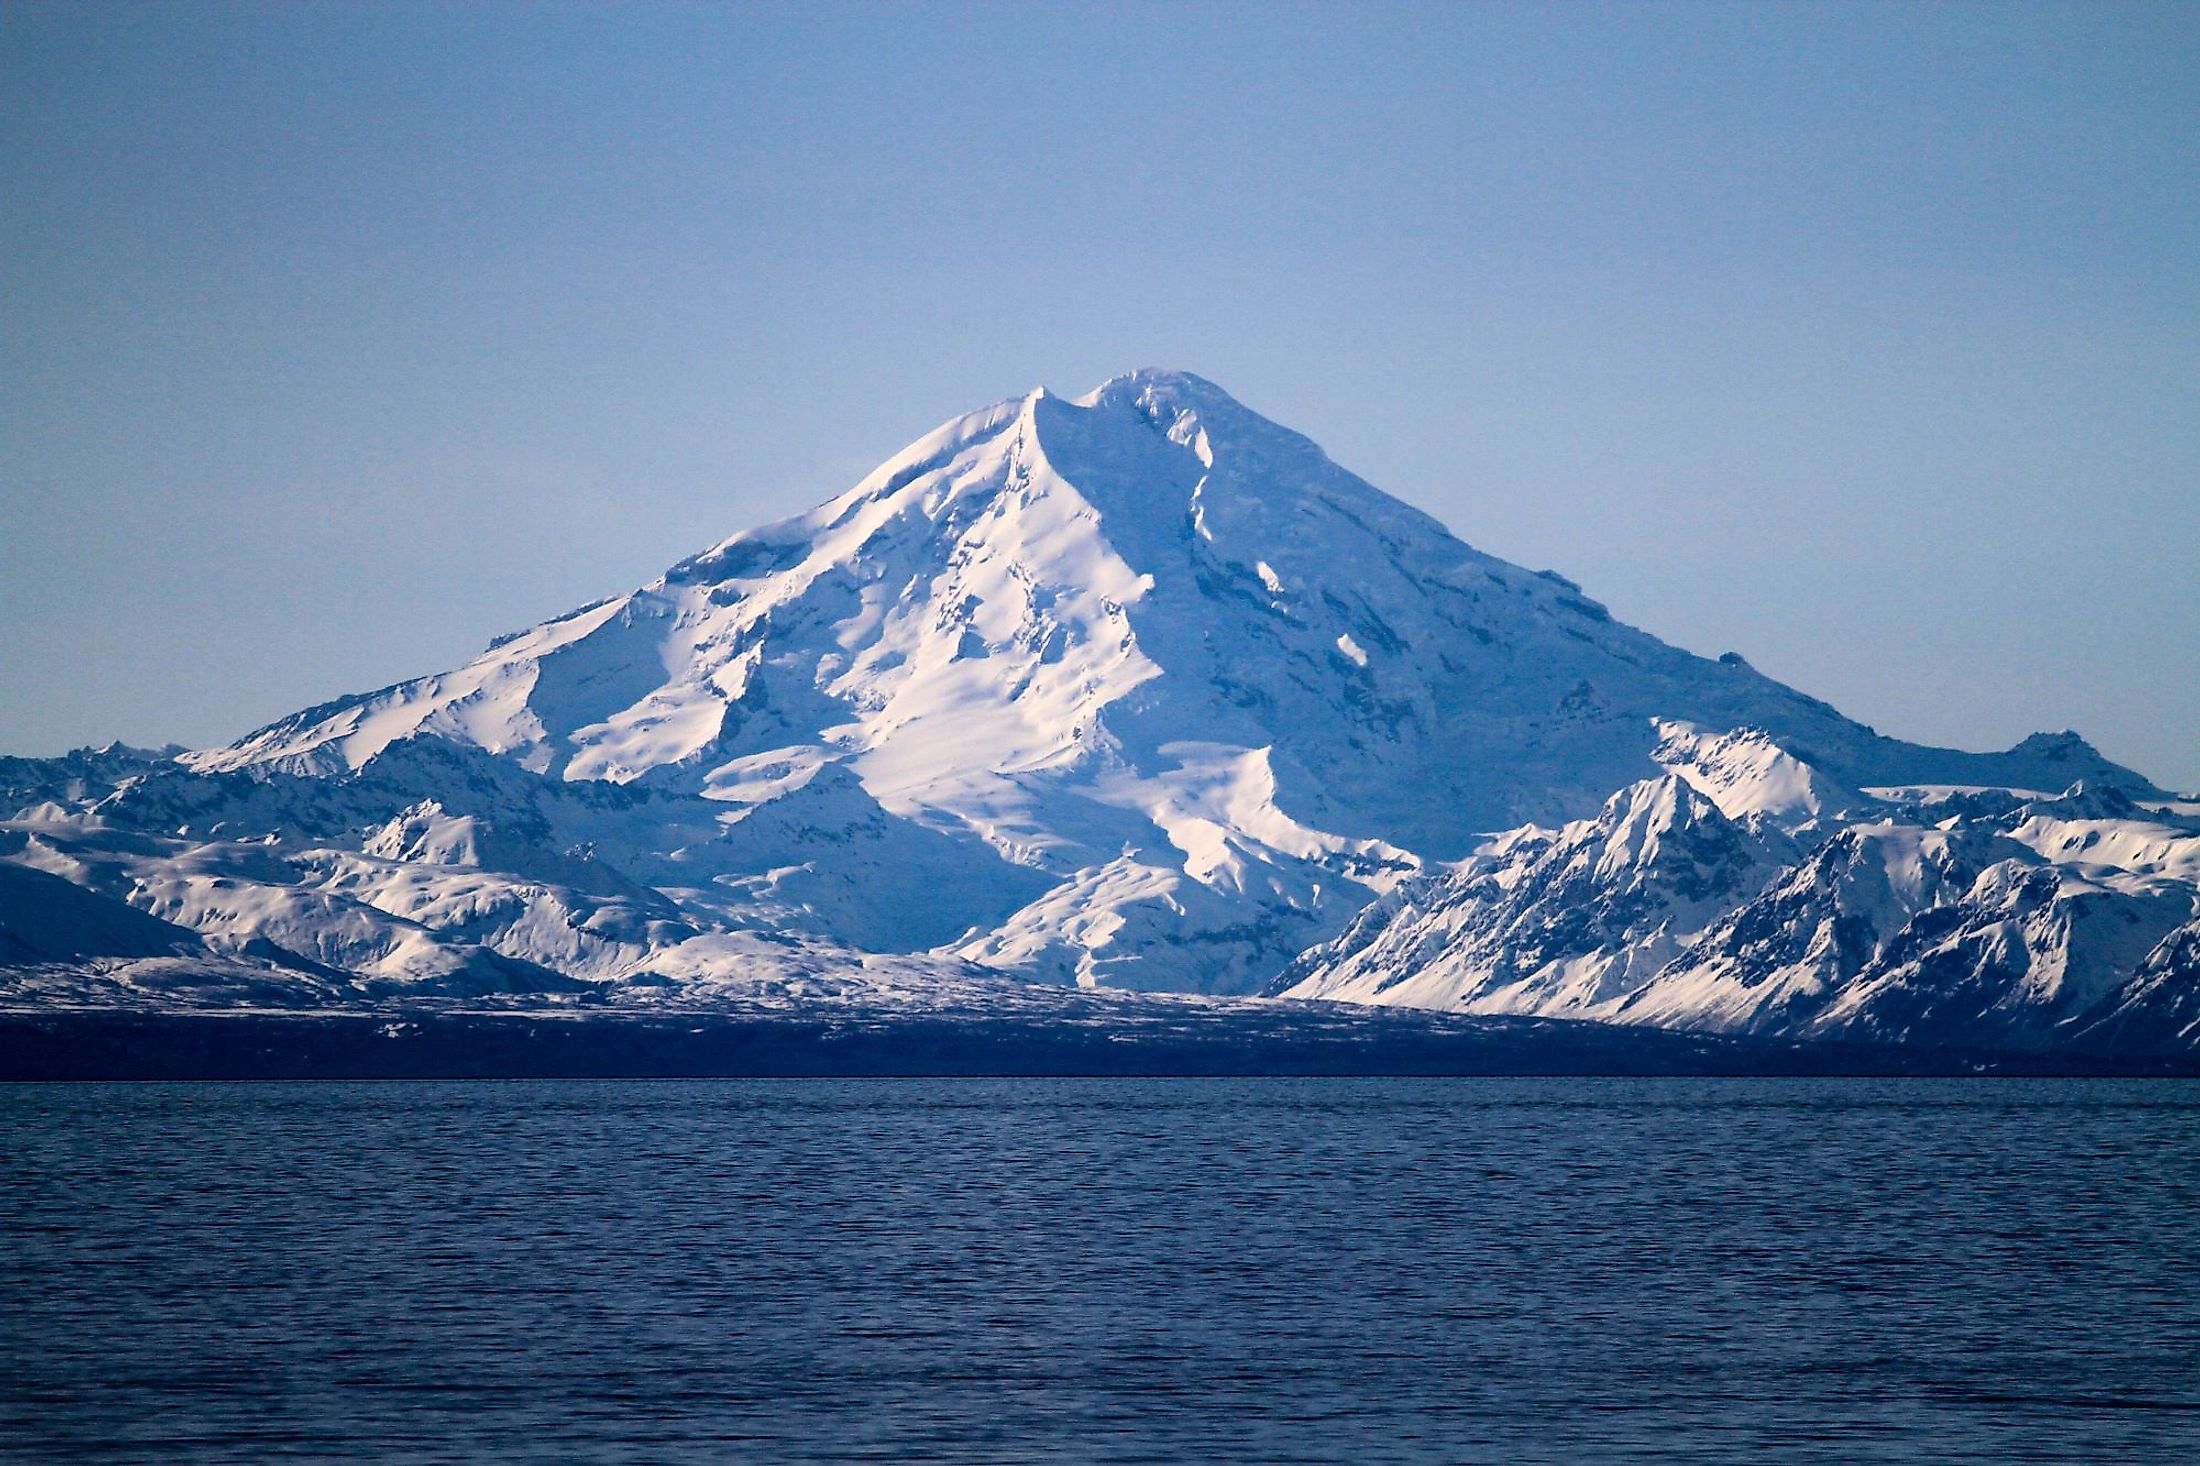 Mount Redoubt Volcano in Alaska